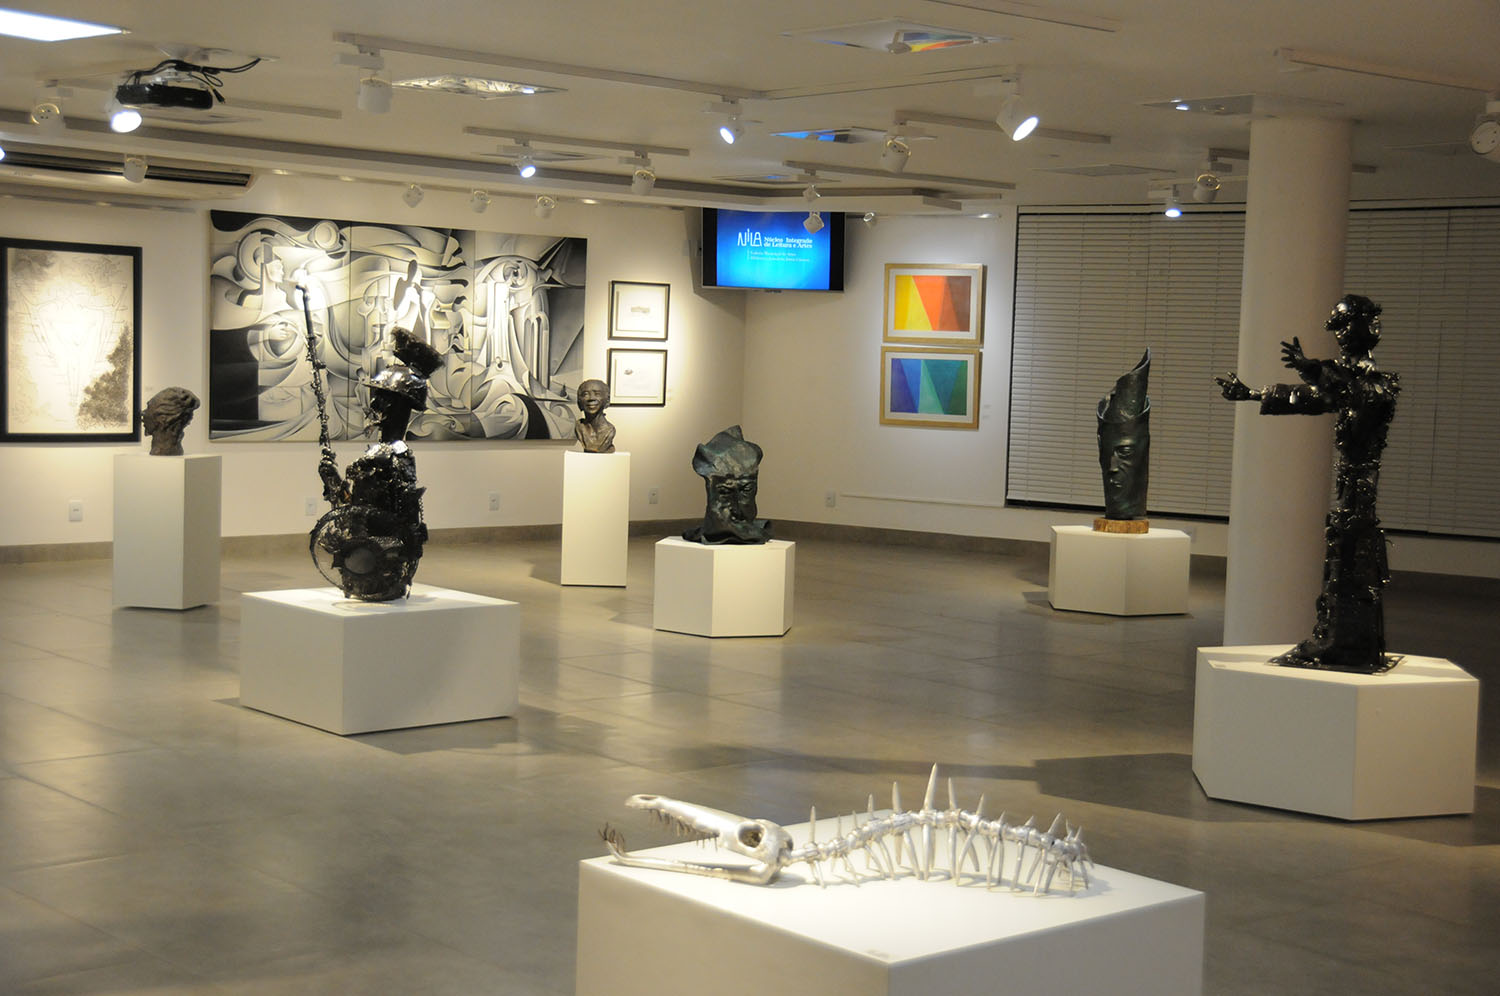 Galeria de Artes NILA.